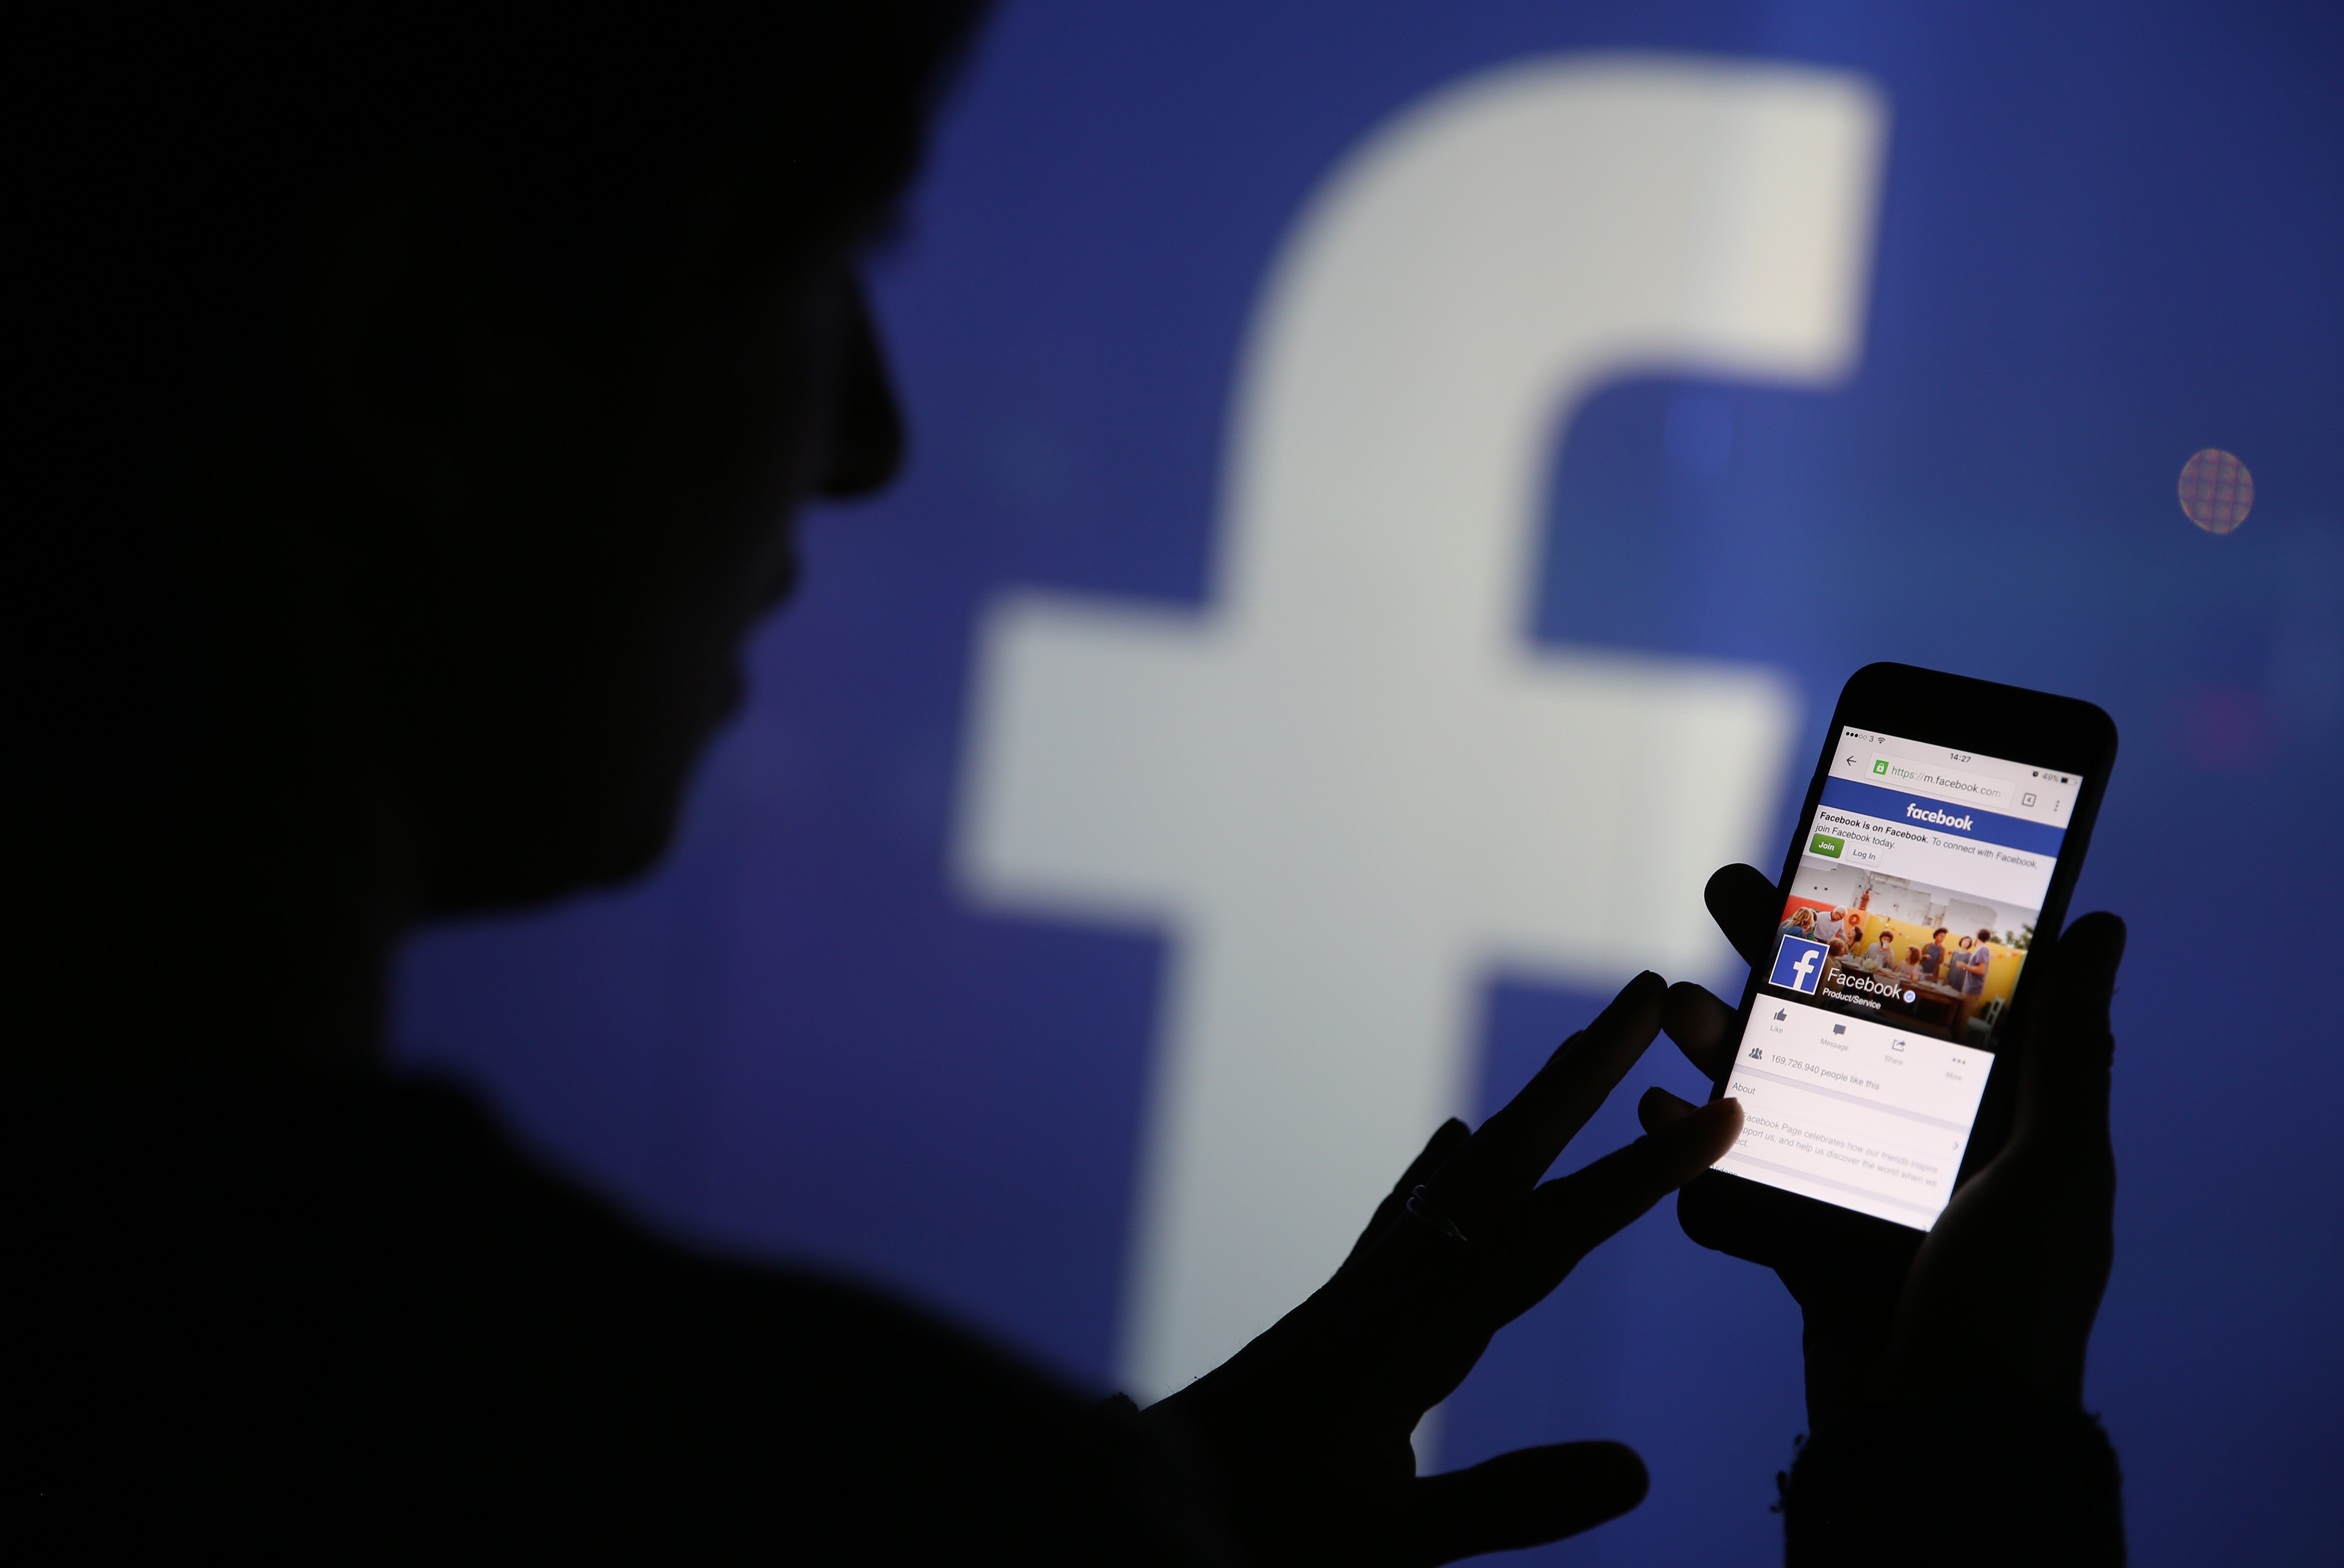 У Facebook пояснили неможливість для ЗМІ публікувати пости з гіперпосиланнями